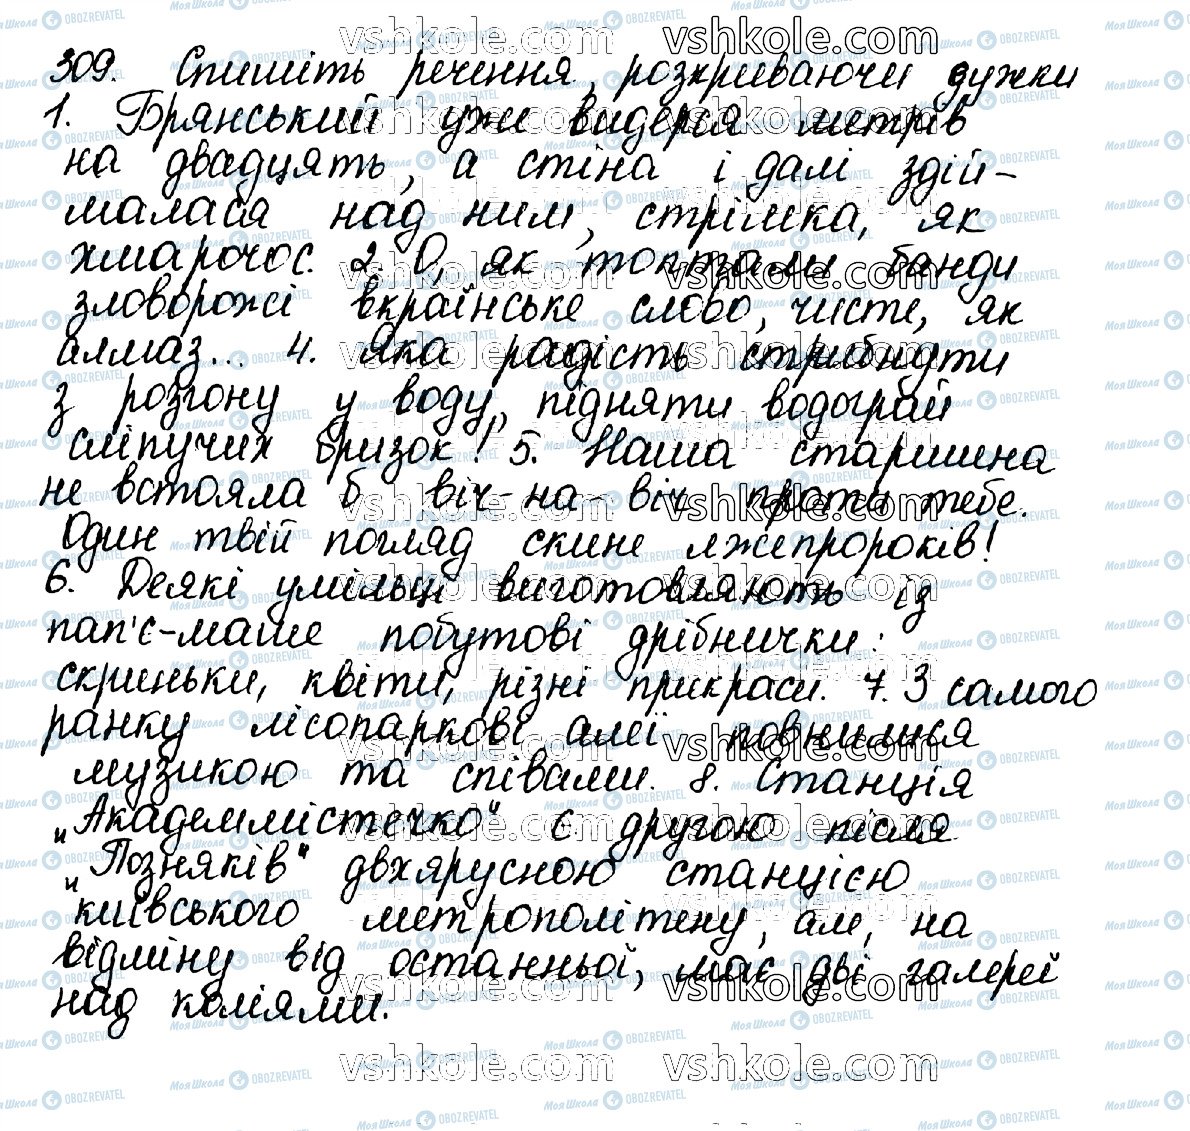 ГДЗ Українська мова 10 клас сторінка 309